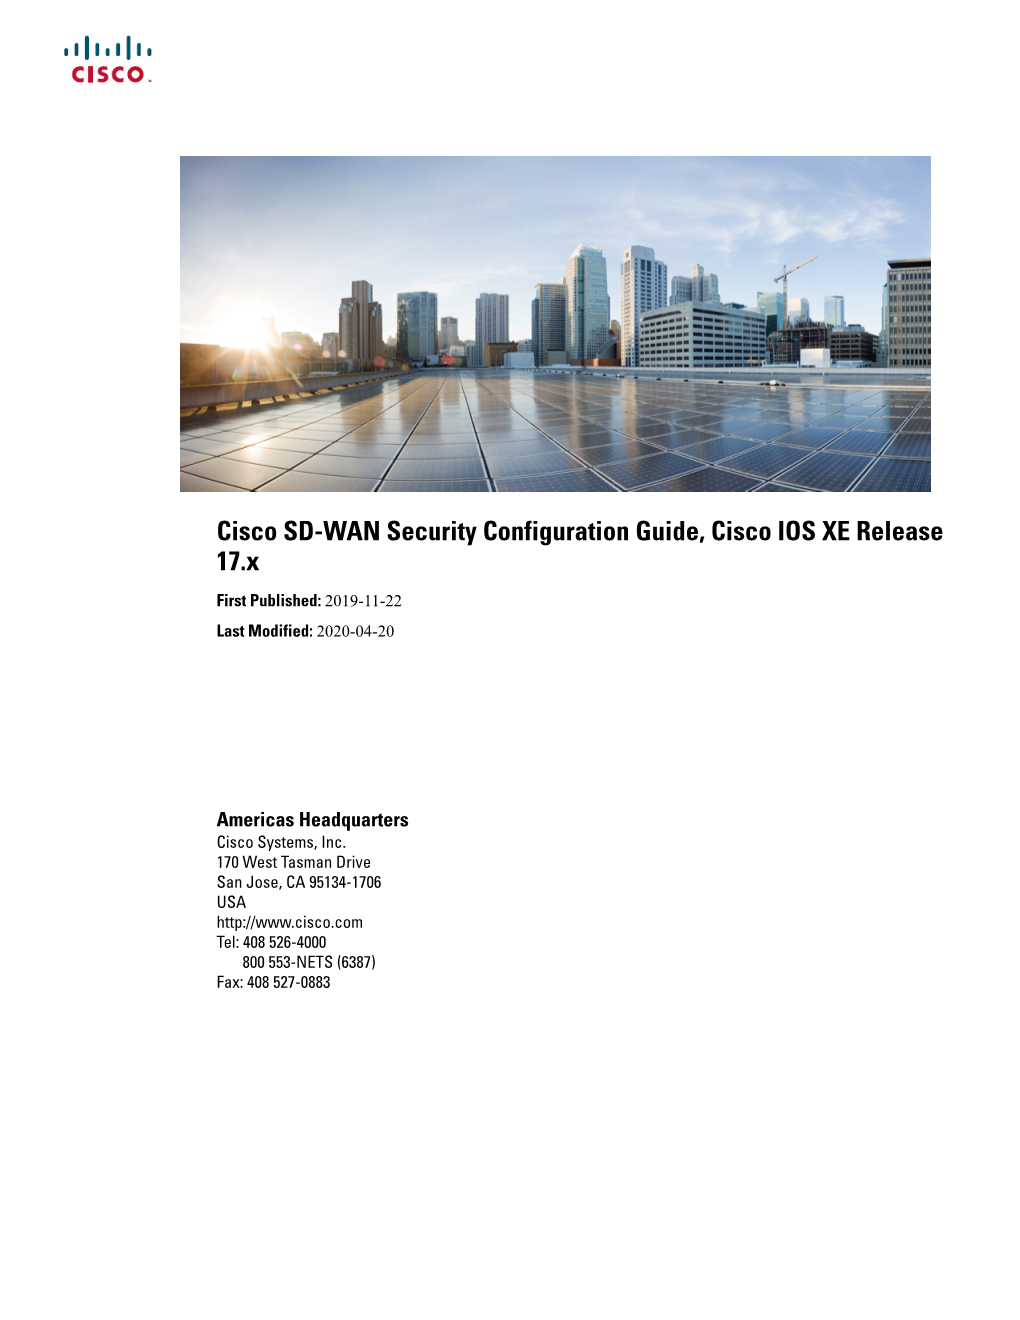 Cisco SD-WAN Security Configuration Guide, Cisco IOS XE Release 17.X